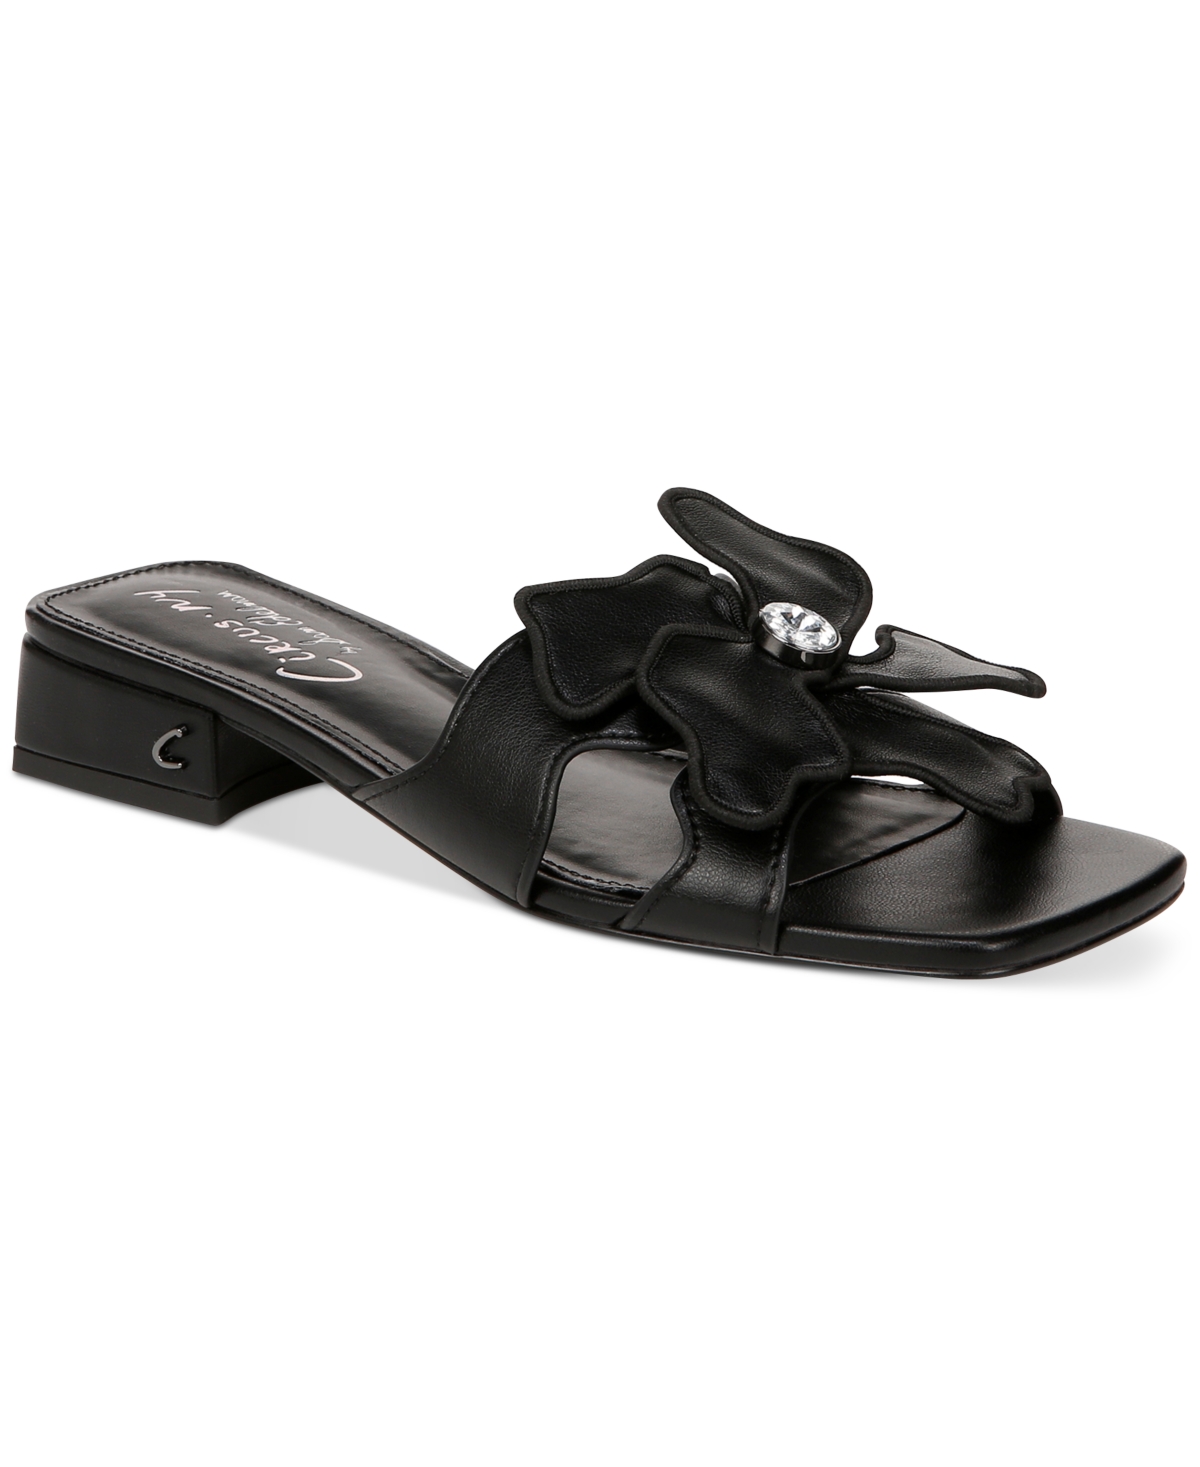 Women's Jolie Flower Block-Heel Slide Sandals - Black